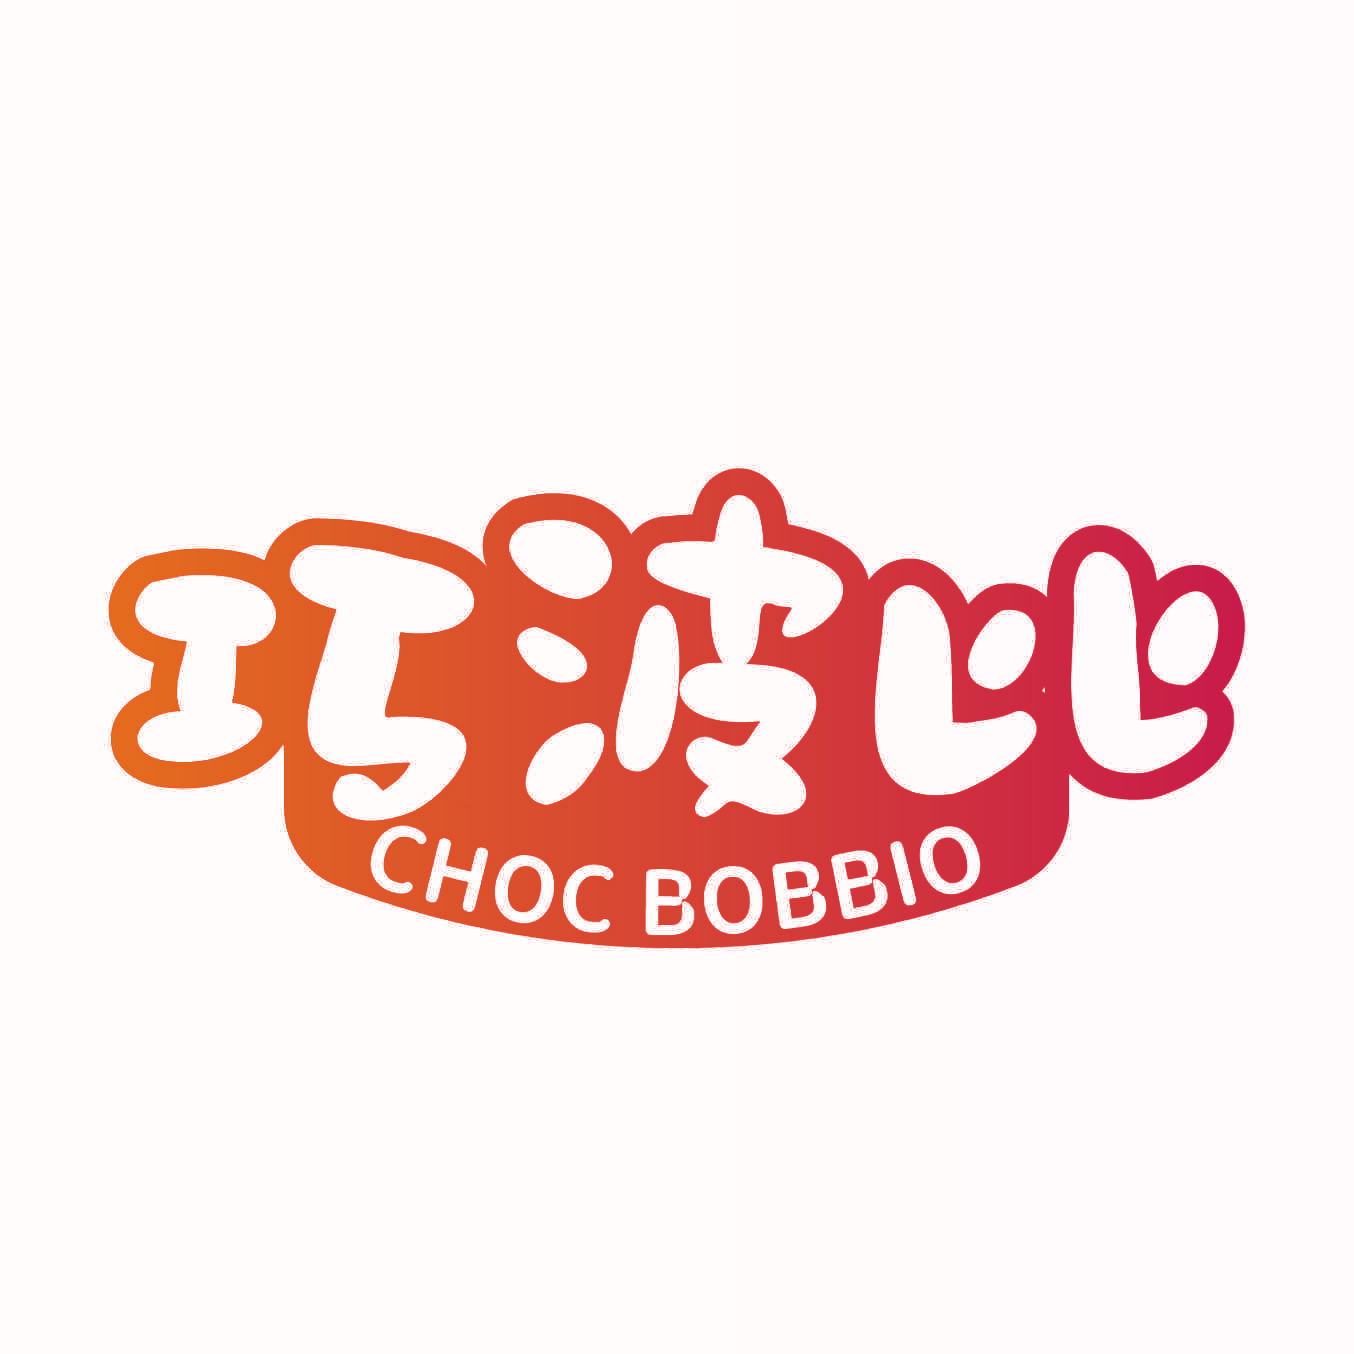 巧波比 CHOC BOBBIO